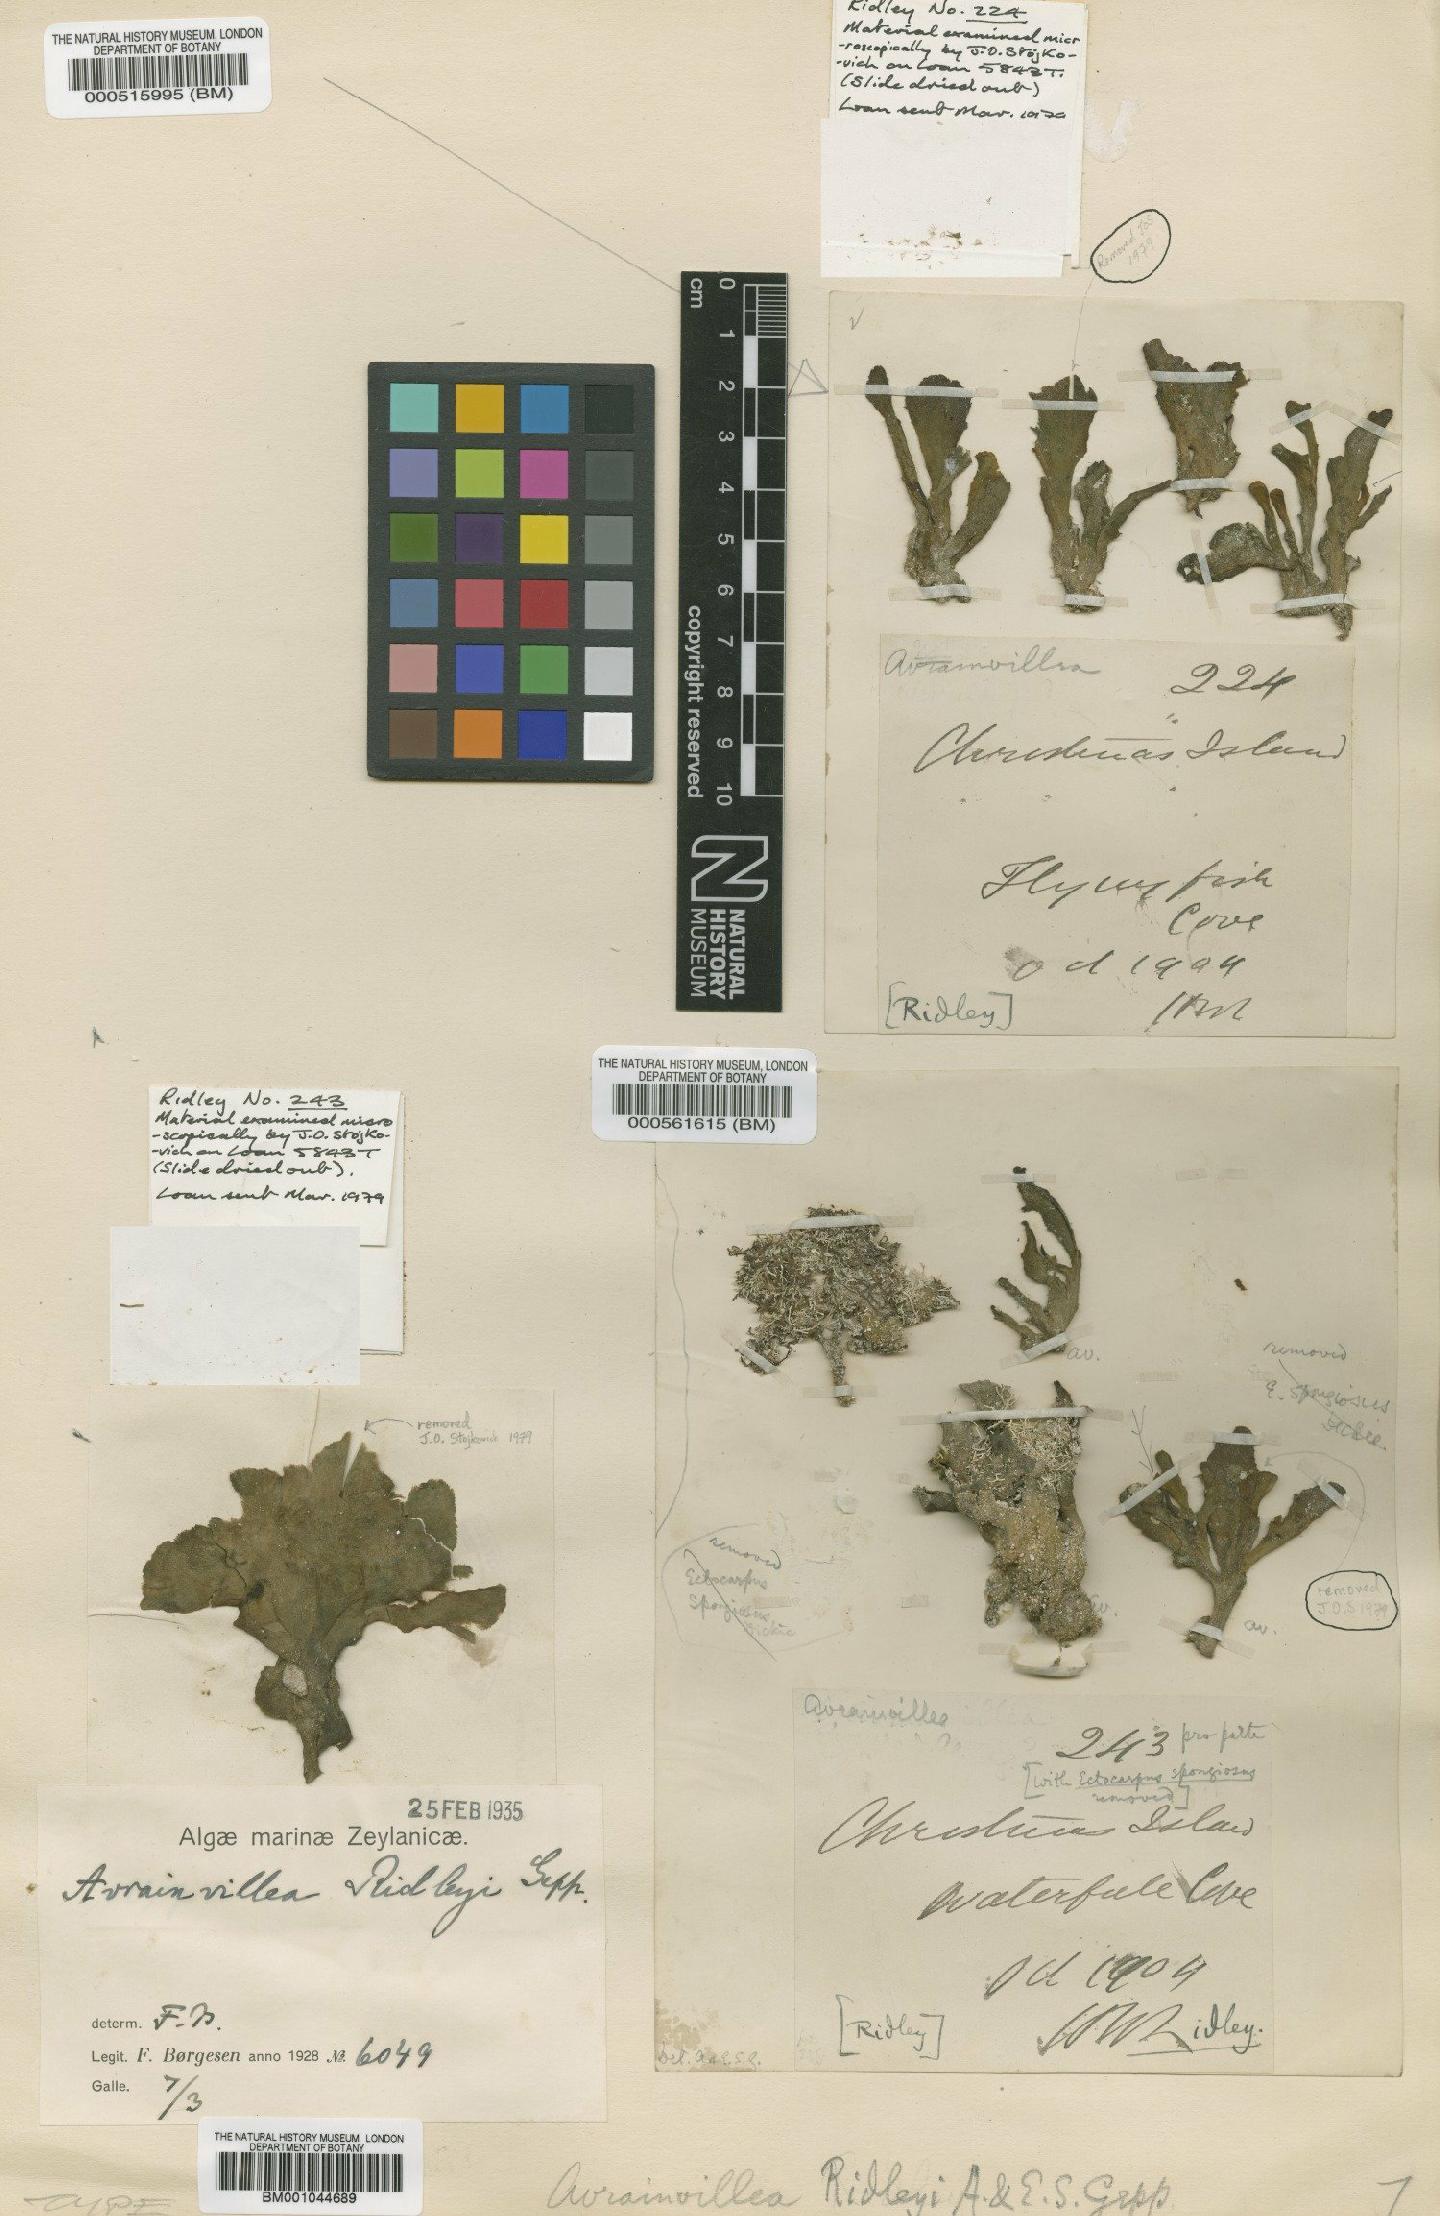 To NHMUK collection (Avrainvillea ridleyi E.Gepp & A.Gepp; Isosyntype; NHMUK:ecatalogue:4829635)